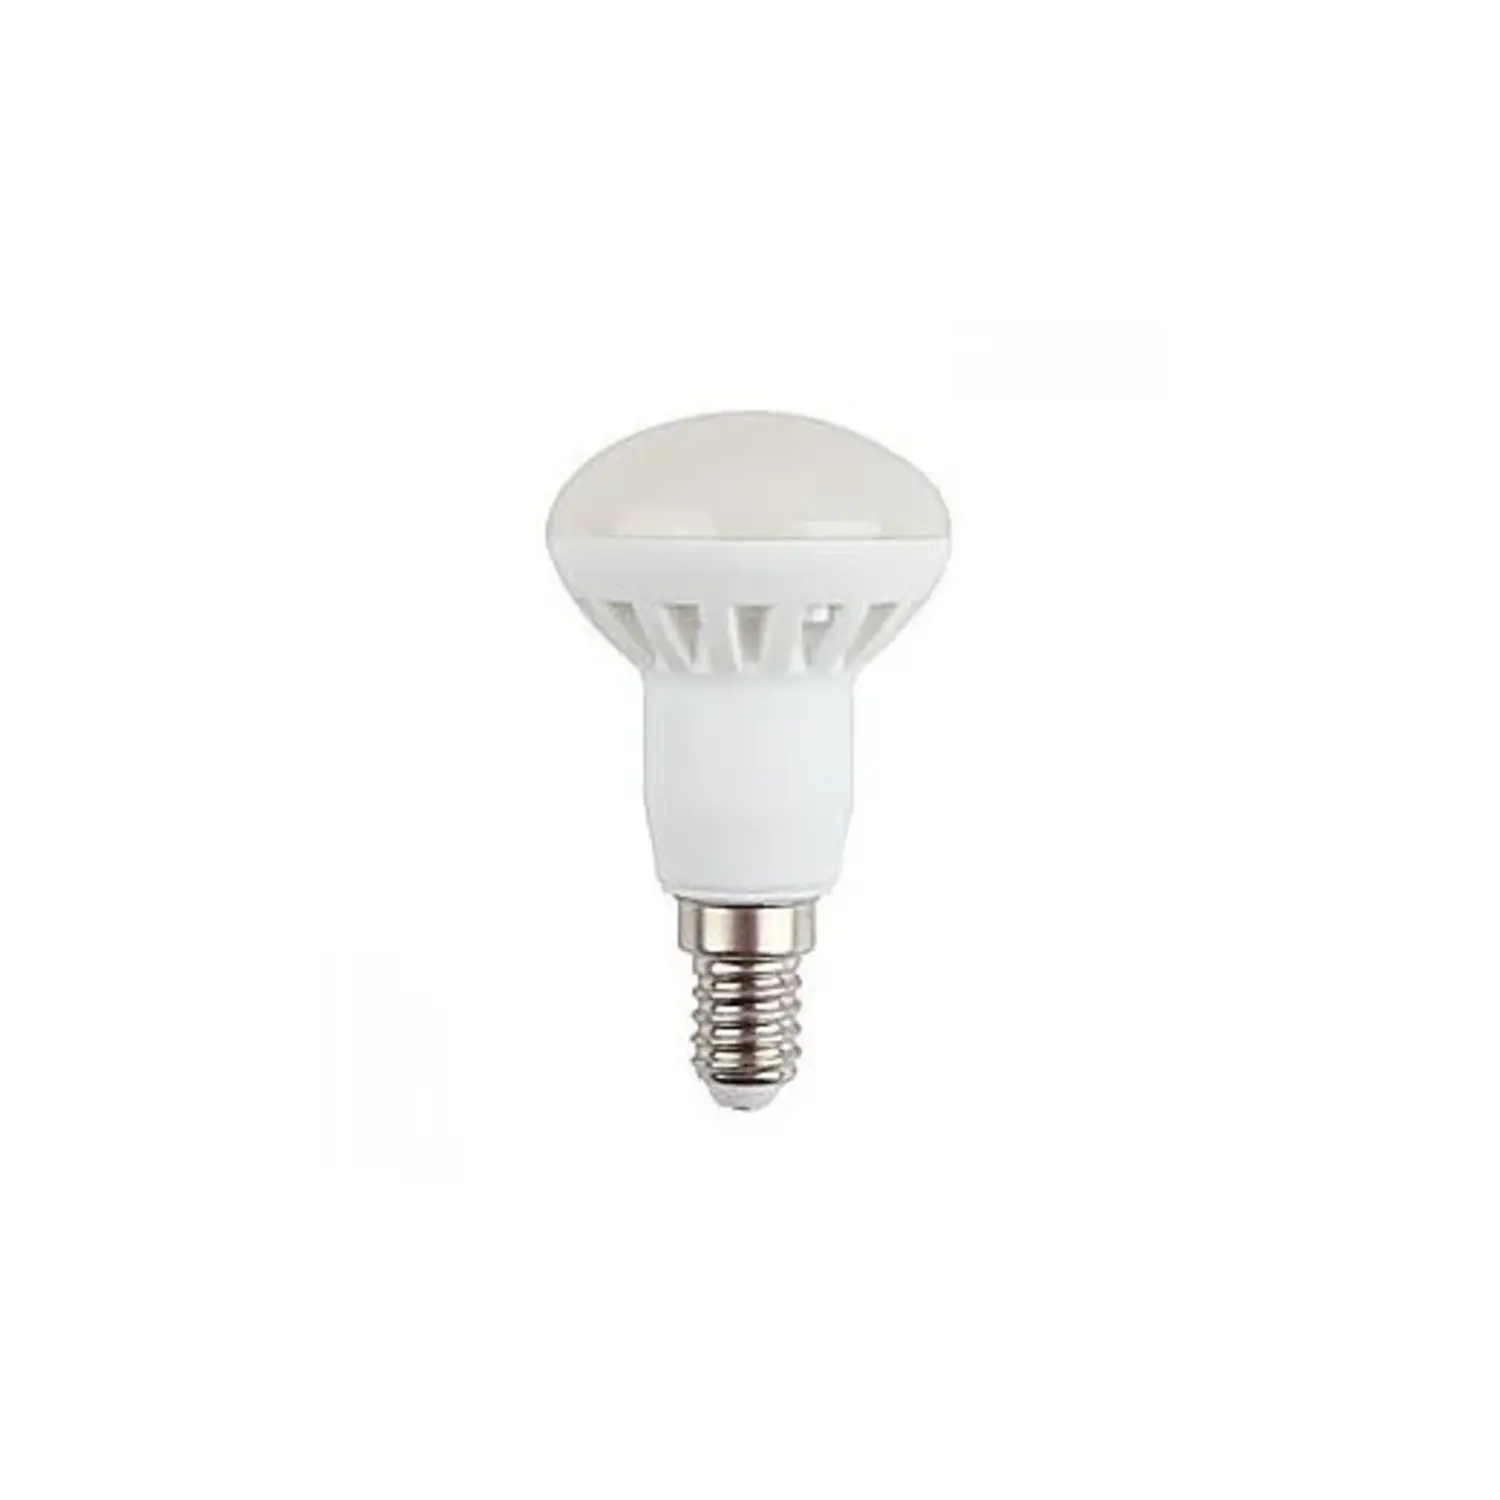 immagine del prodotto lampadina spot r39 led porta faretto e14 3 watt bianco freddo